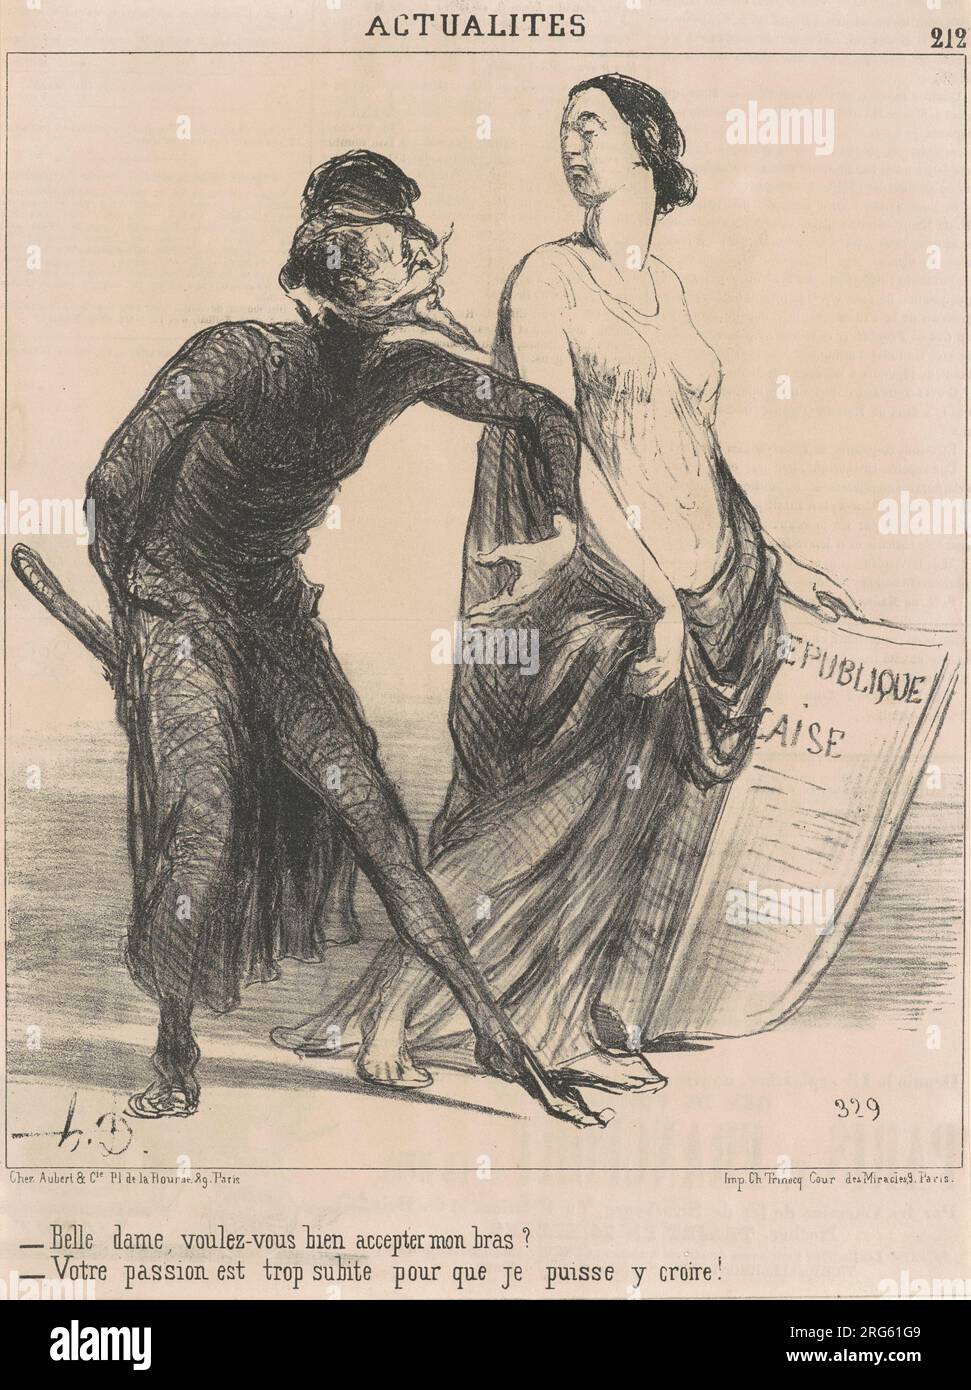 Belle dame voulez-vous  accepter mon bras? 19th century by Honoré  Daumier Stock Photo - Alamy